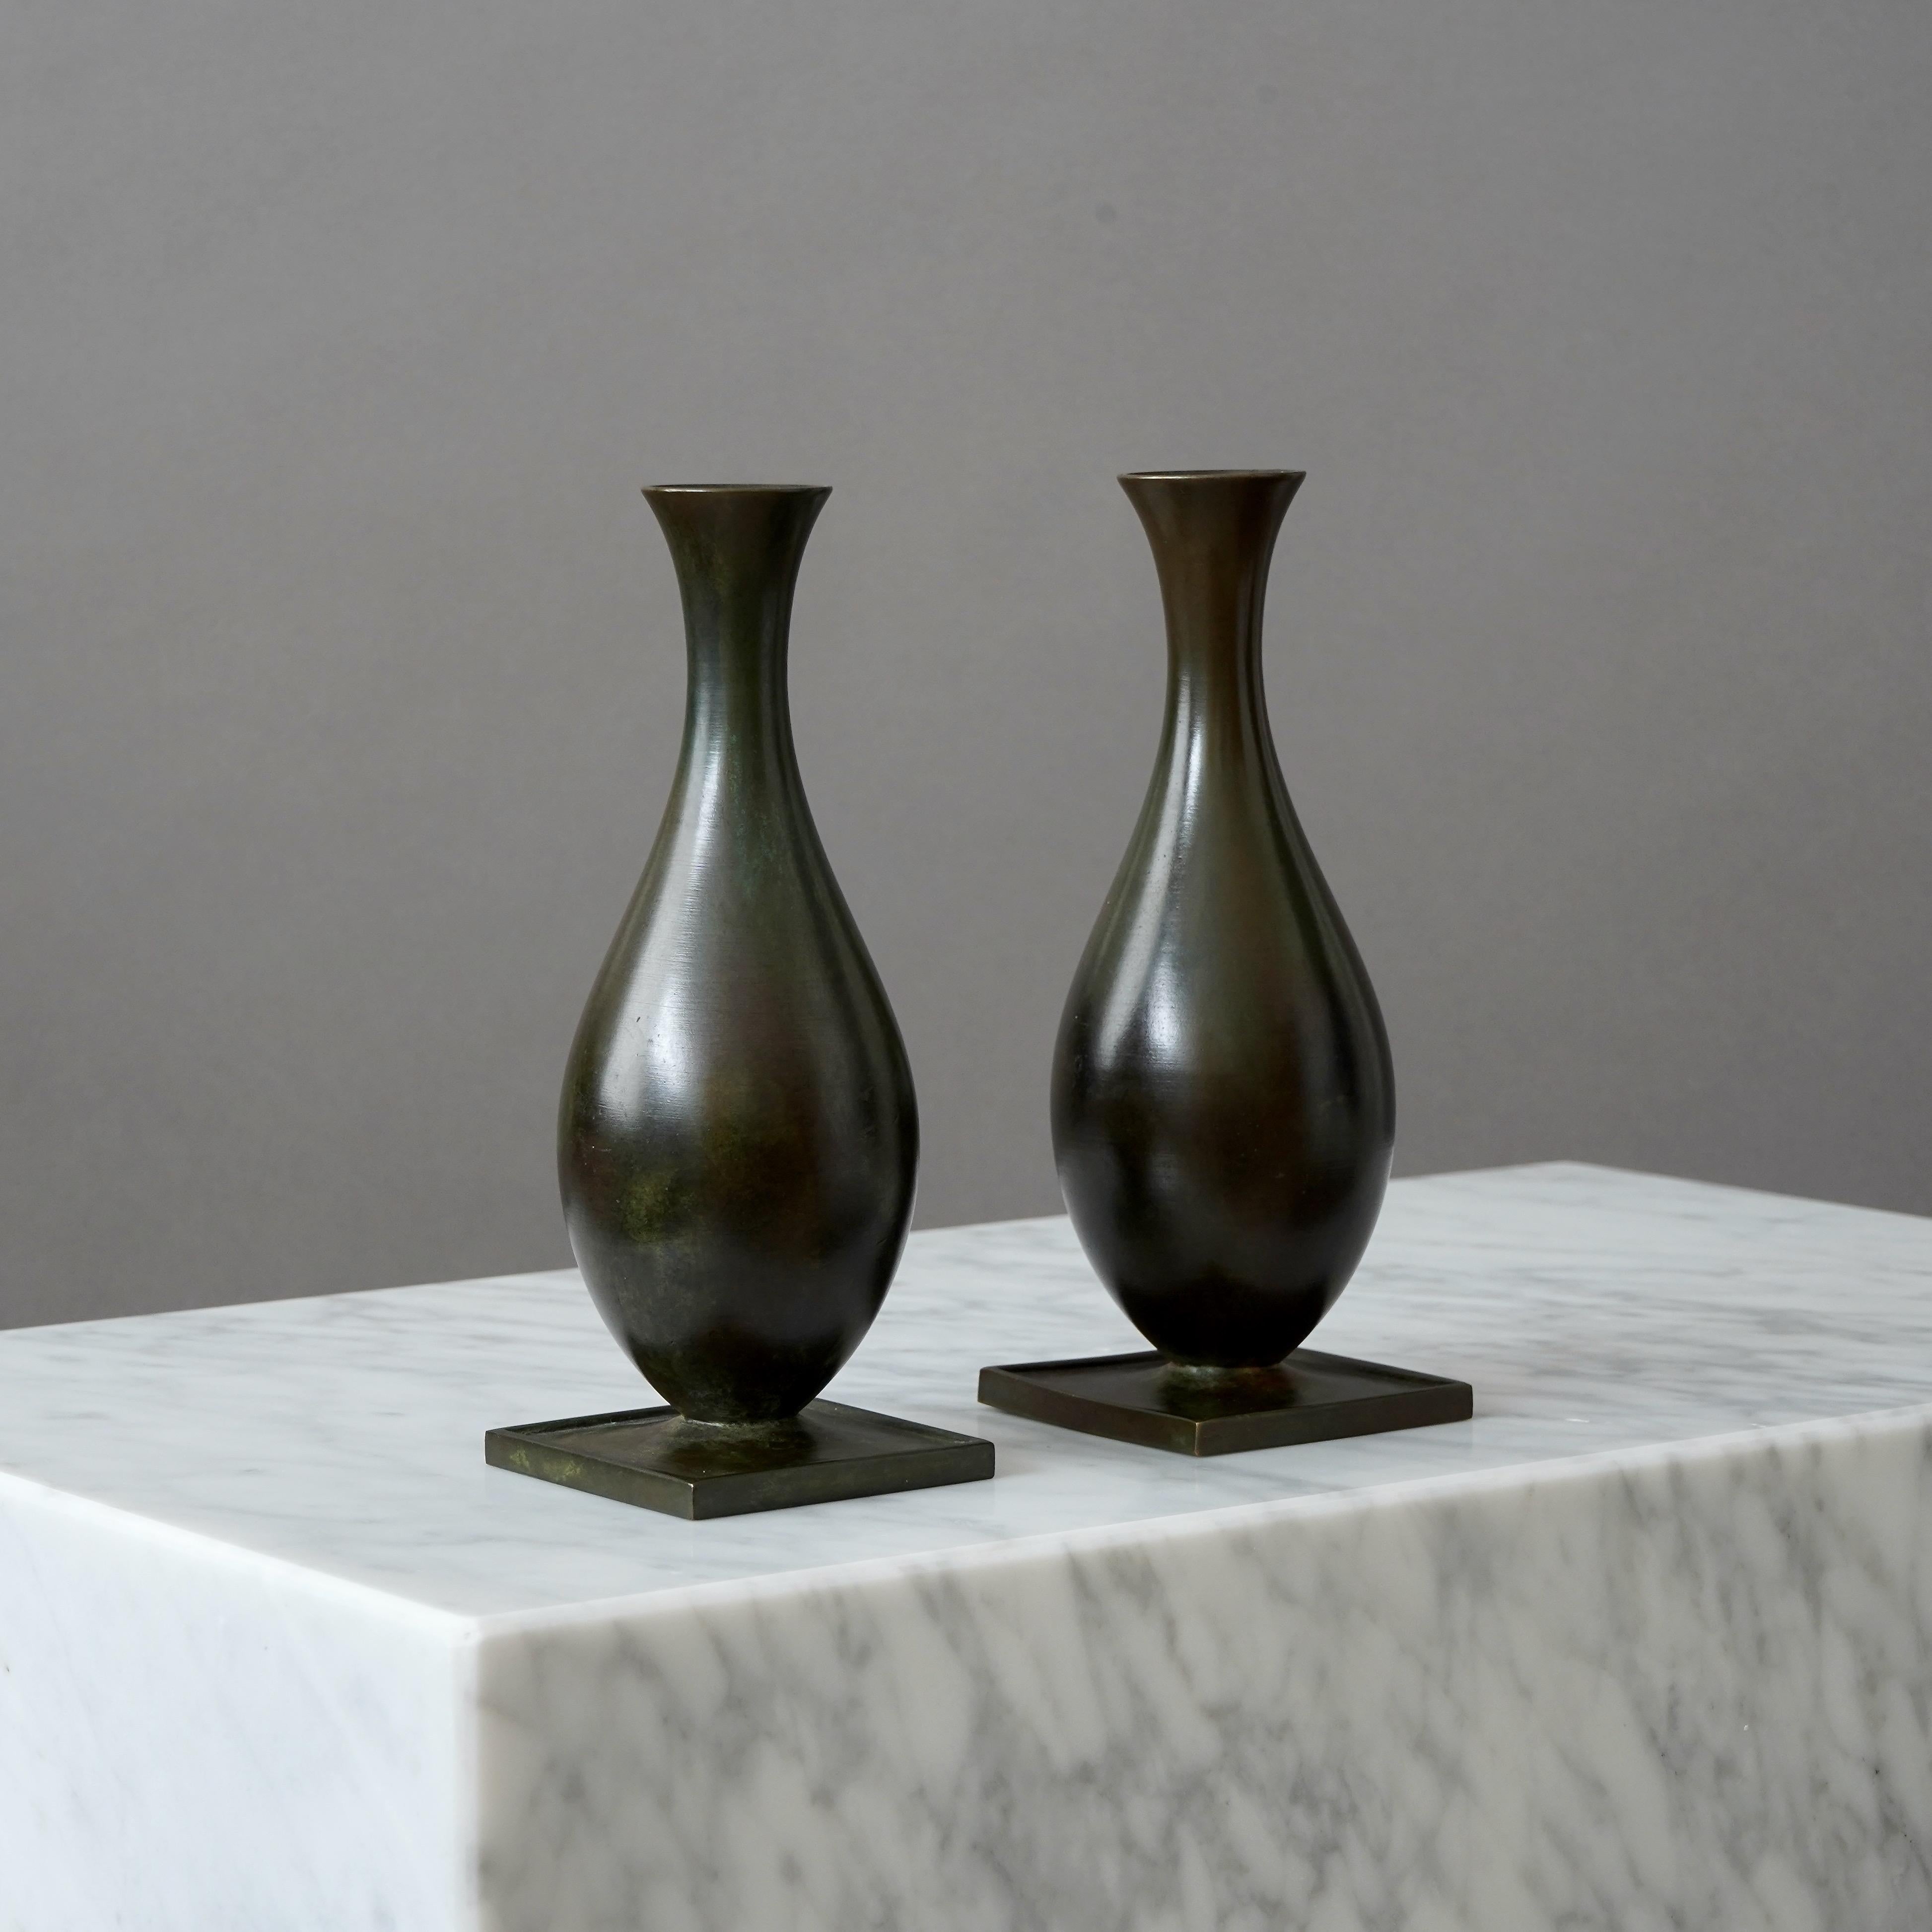 Cast Set of 2 Bronze Art Deco Vases by GAB Guldsmedsaktiebolaget, Sweden, 1930s For Sale